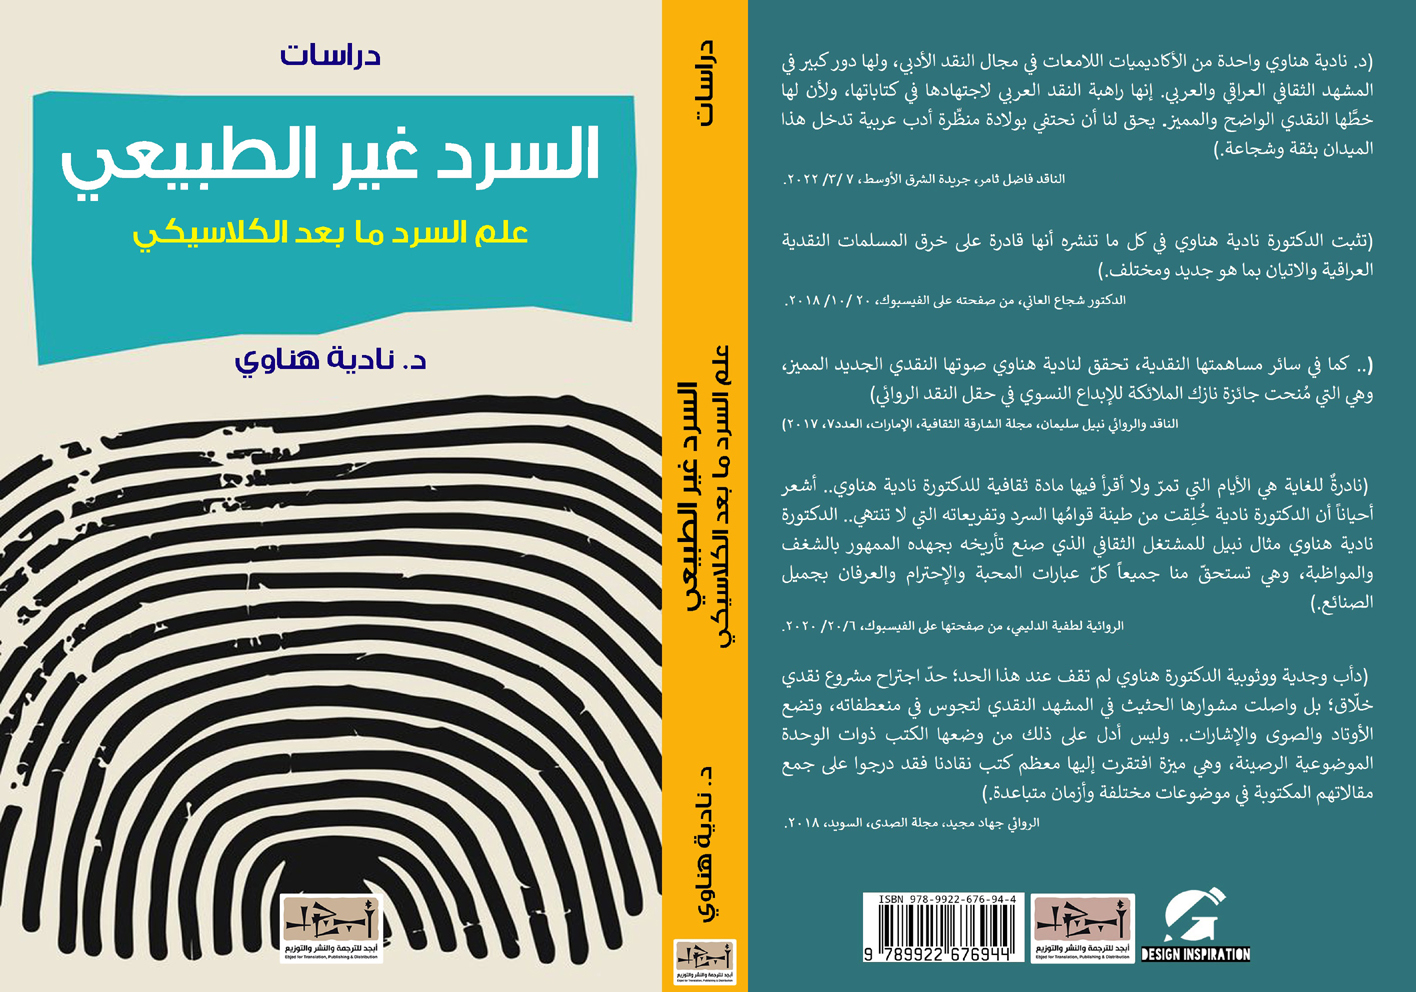 اسم الكتاب: علم السرد ما بعد الكلاسيكي - السرد غير الطبيعي – ج١ - دراسات  - د. نادية ناوي